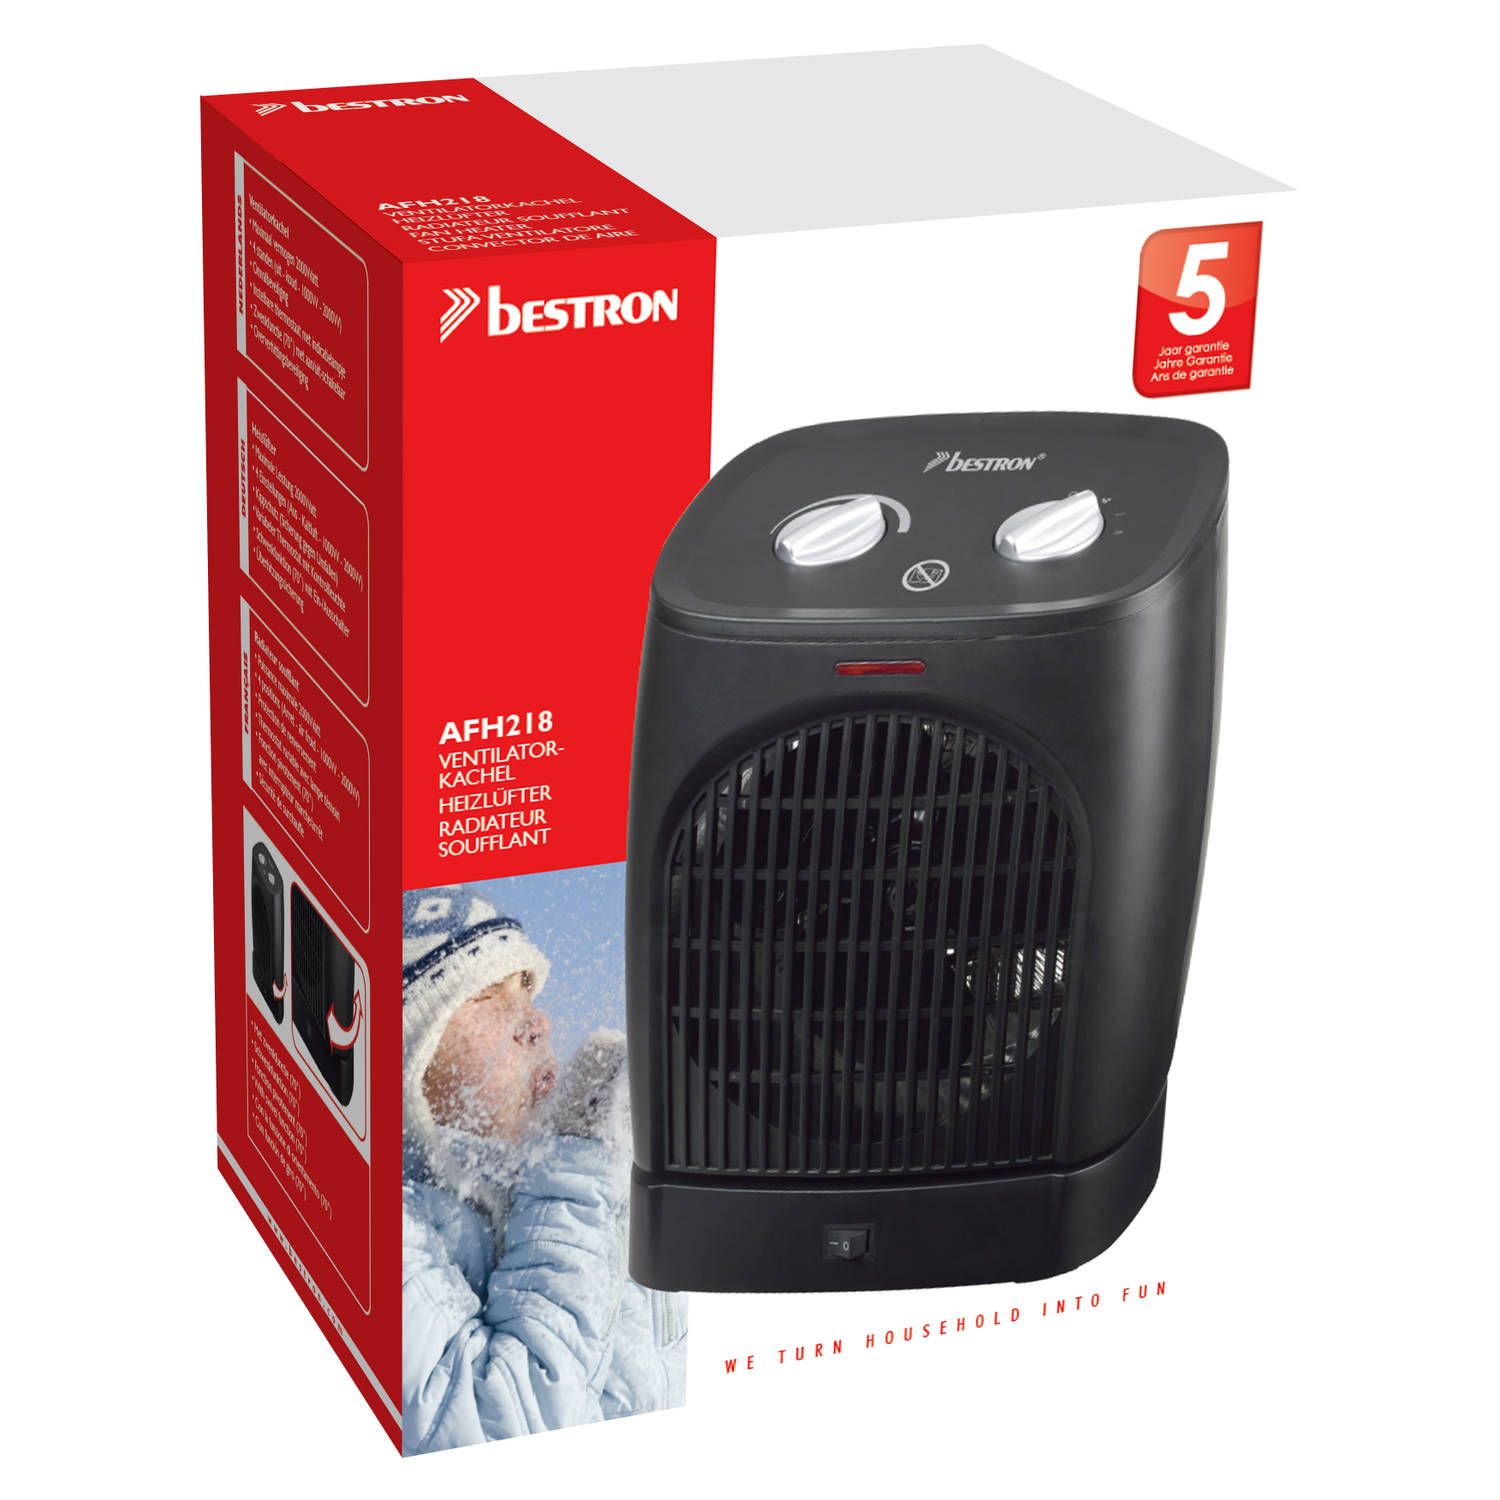 veiligheid Productie Erfgenaam Bestron ventilator kachel AFH218 - zwart | Blokker